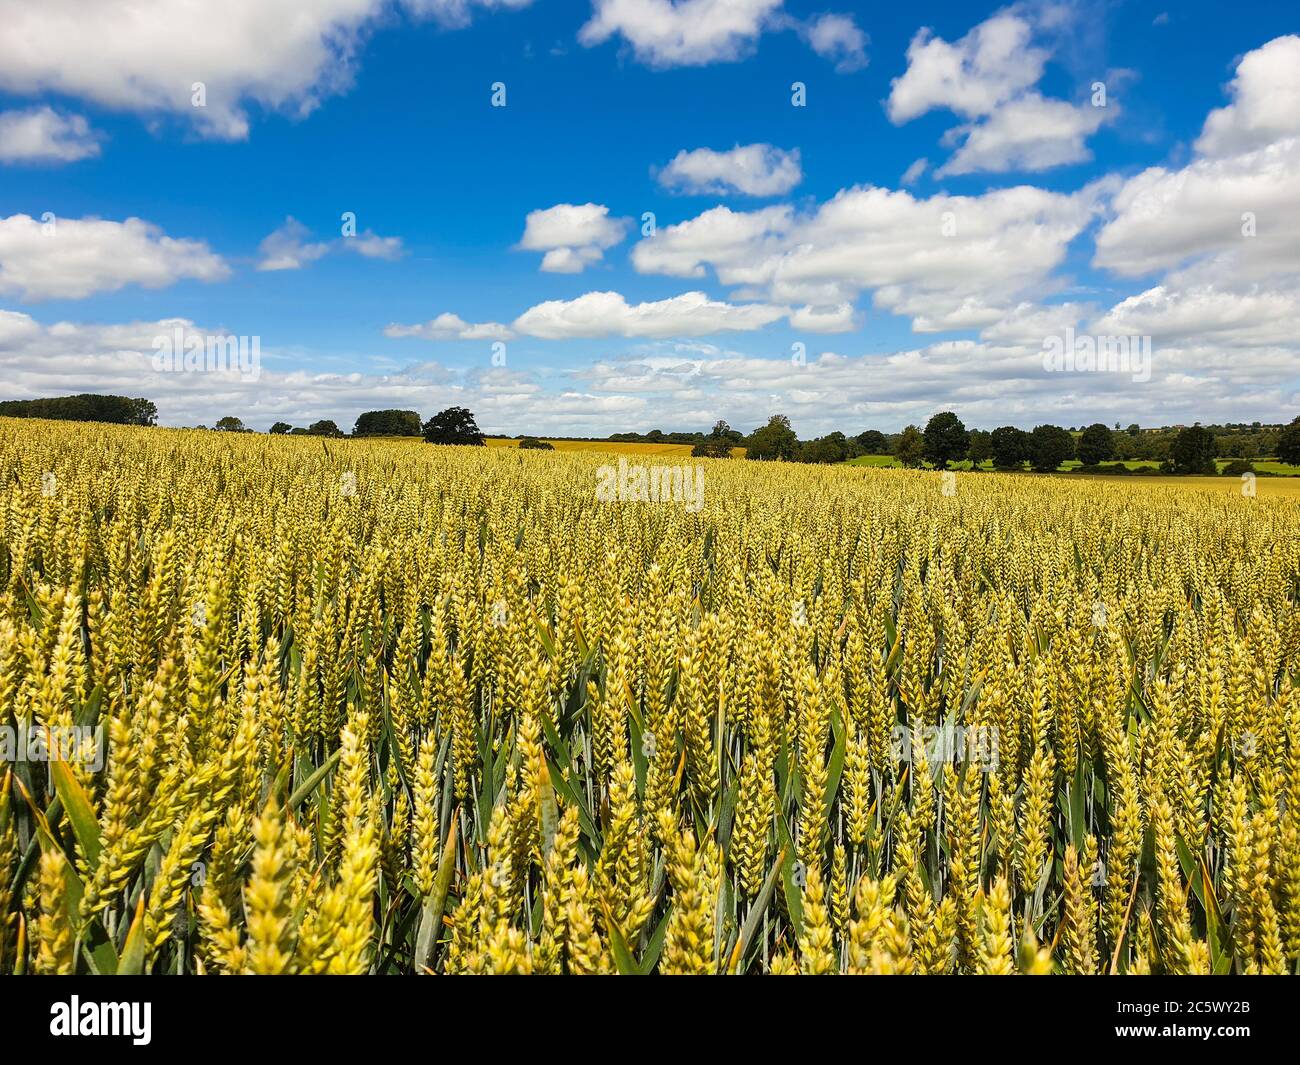 Ein Maisfeld an einem Sommertag. Strahlend blauer Himmel und flauschige weiße Wolken Stockfoto